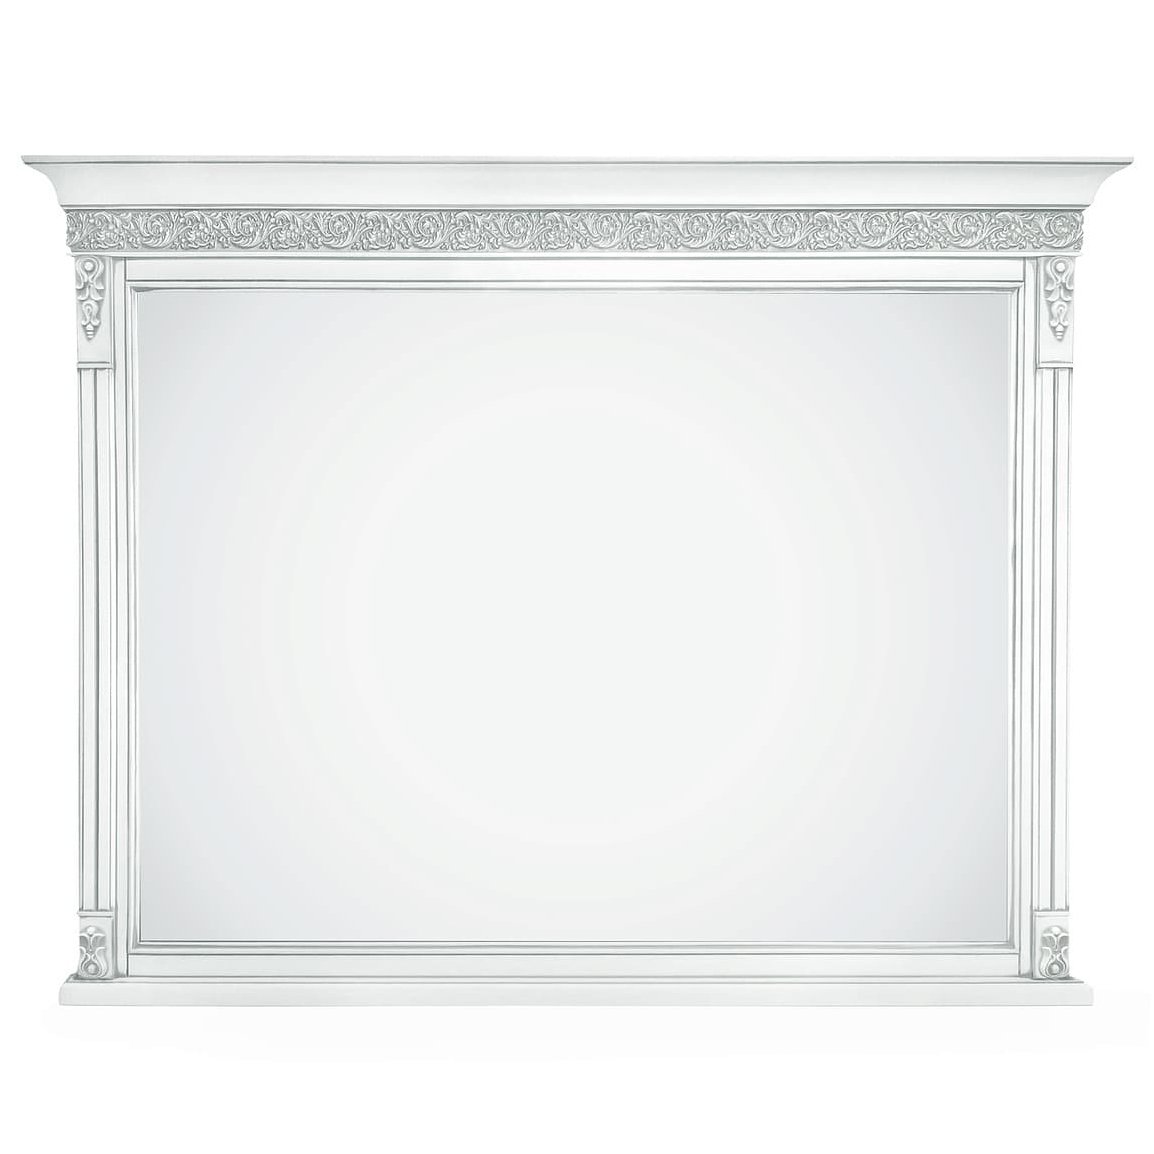 Зеркало Timber Неаполь, навесное, цвет: белый с серебром (Т-405/BA)Т-405